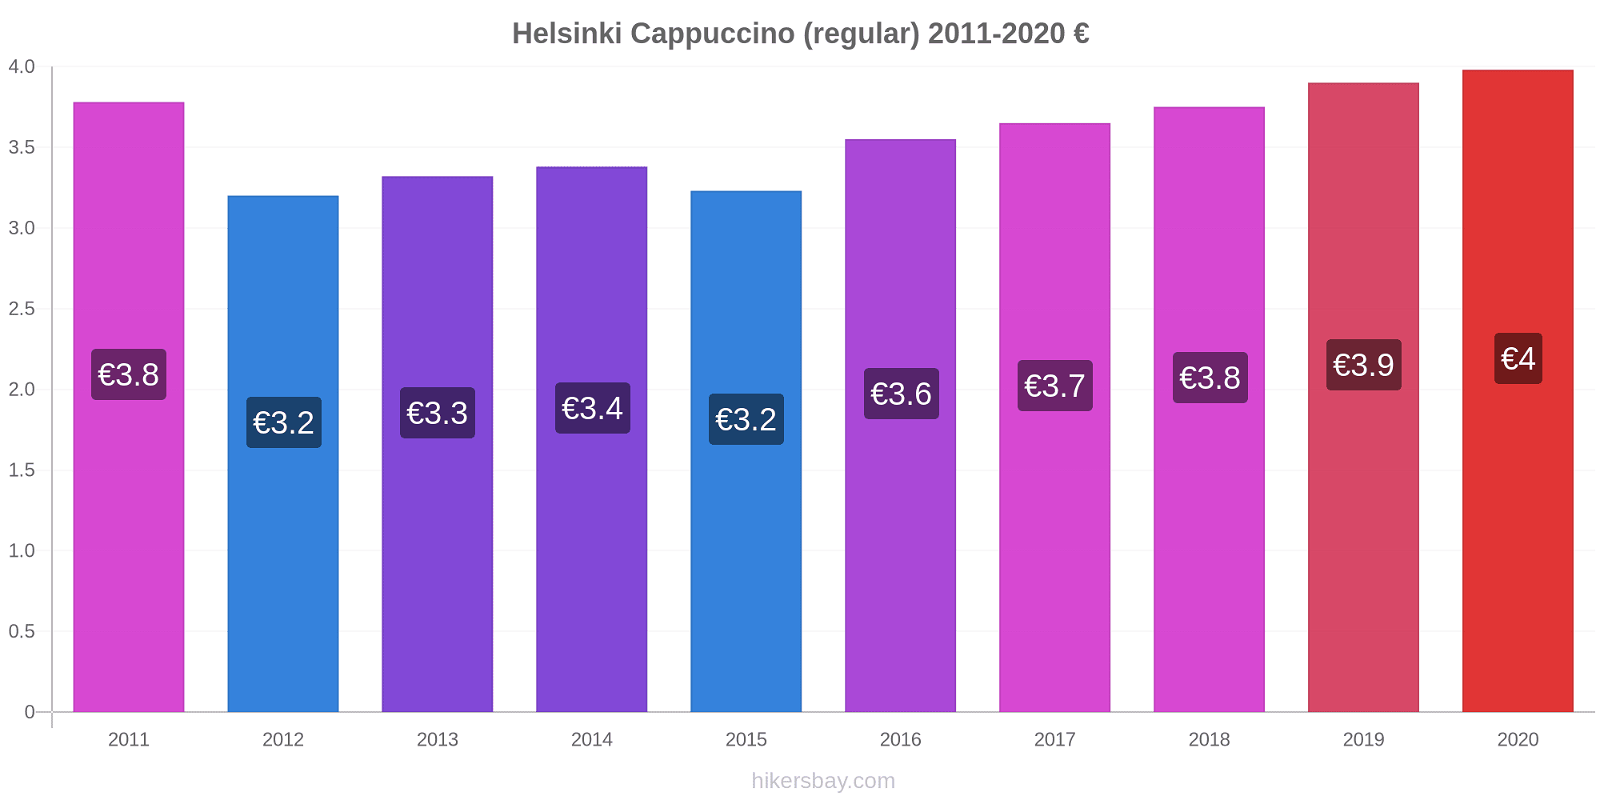 Helsinki price changes Cappuccino (regular) hikersbay.com